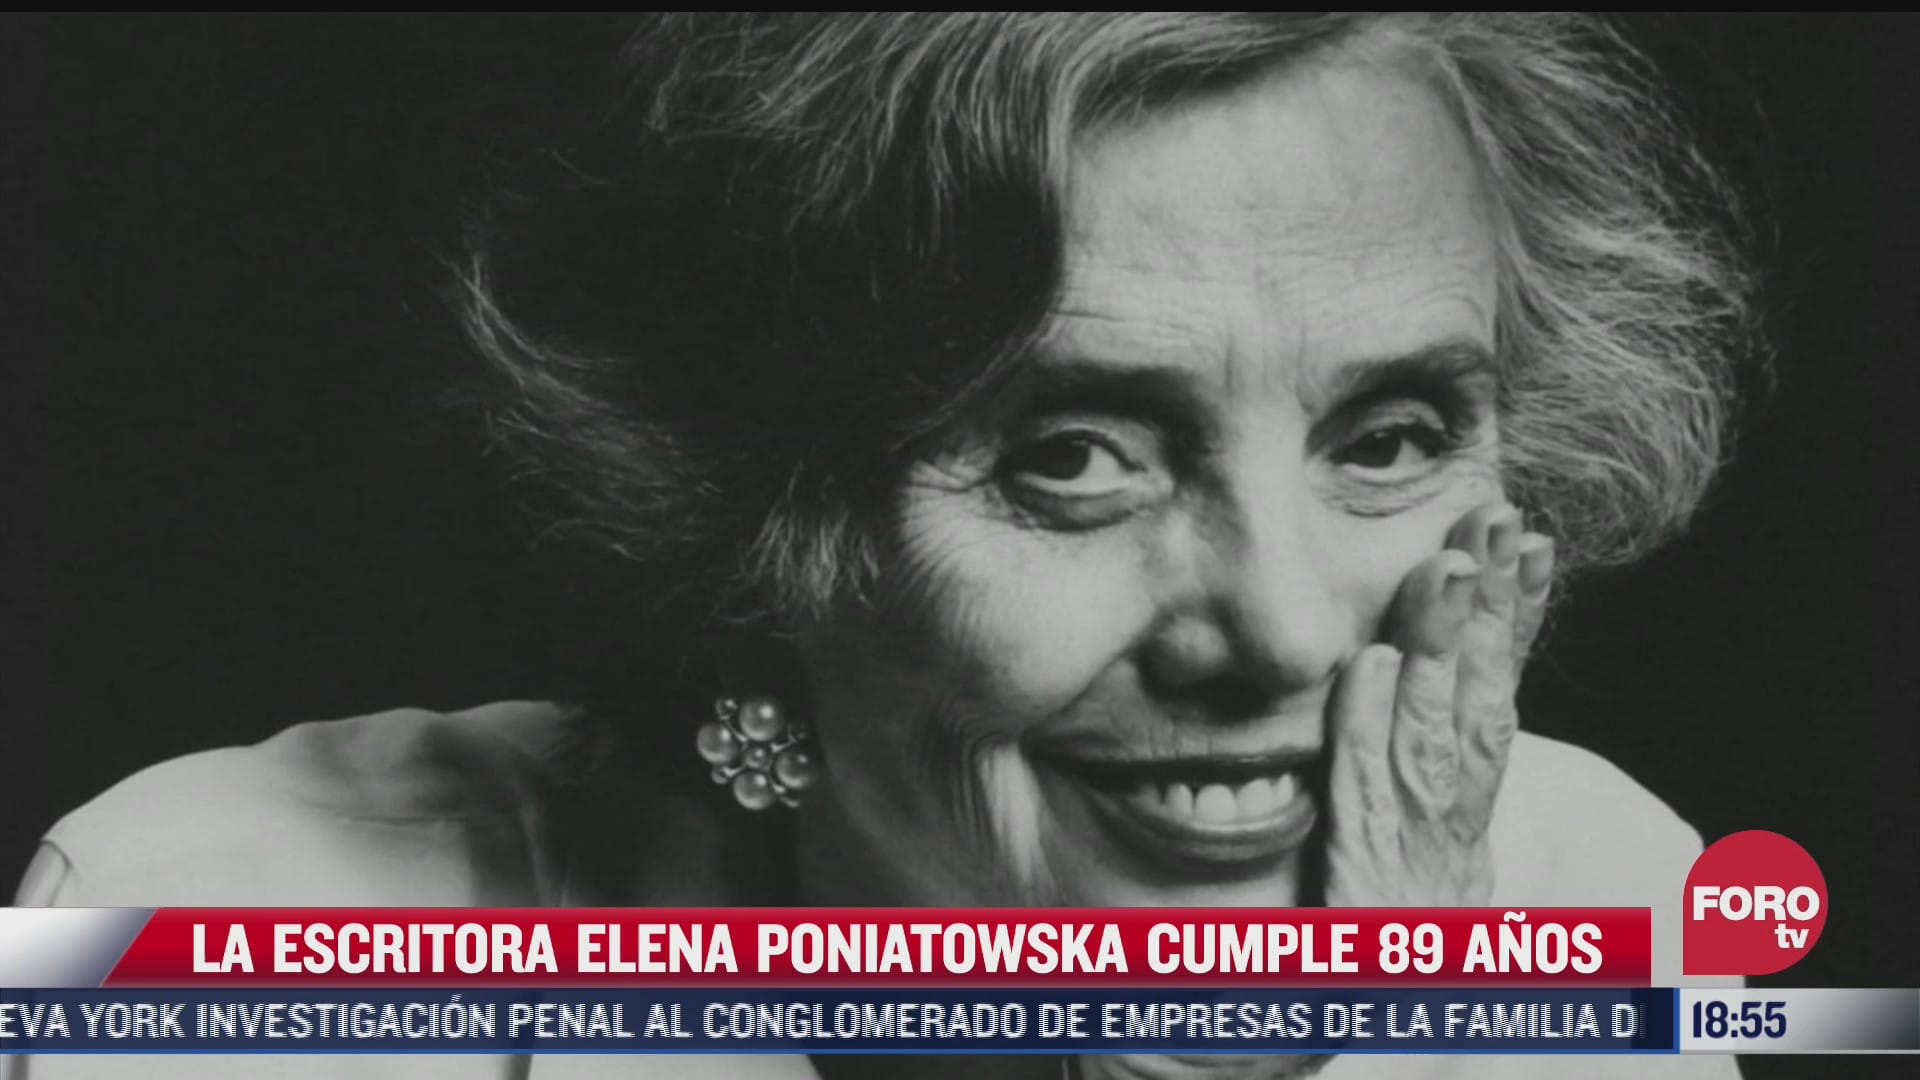 la escritora elena poniatowska cumple 89 anos